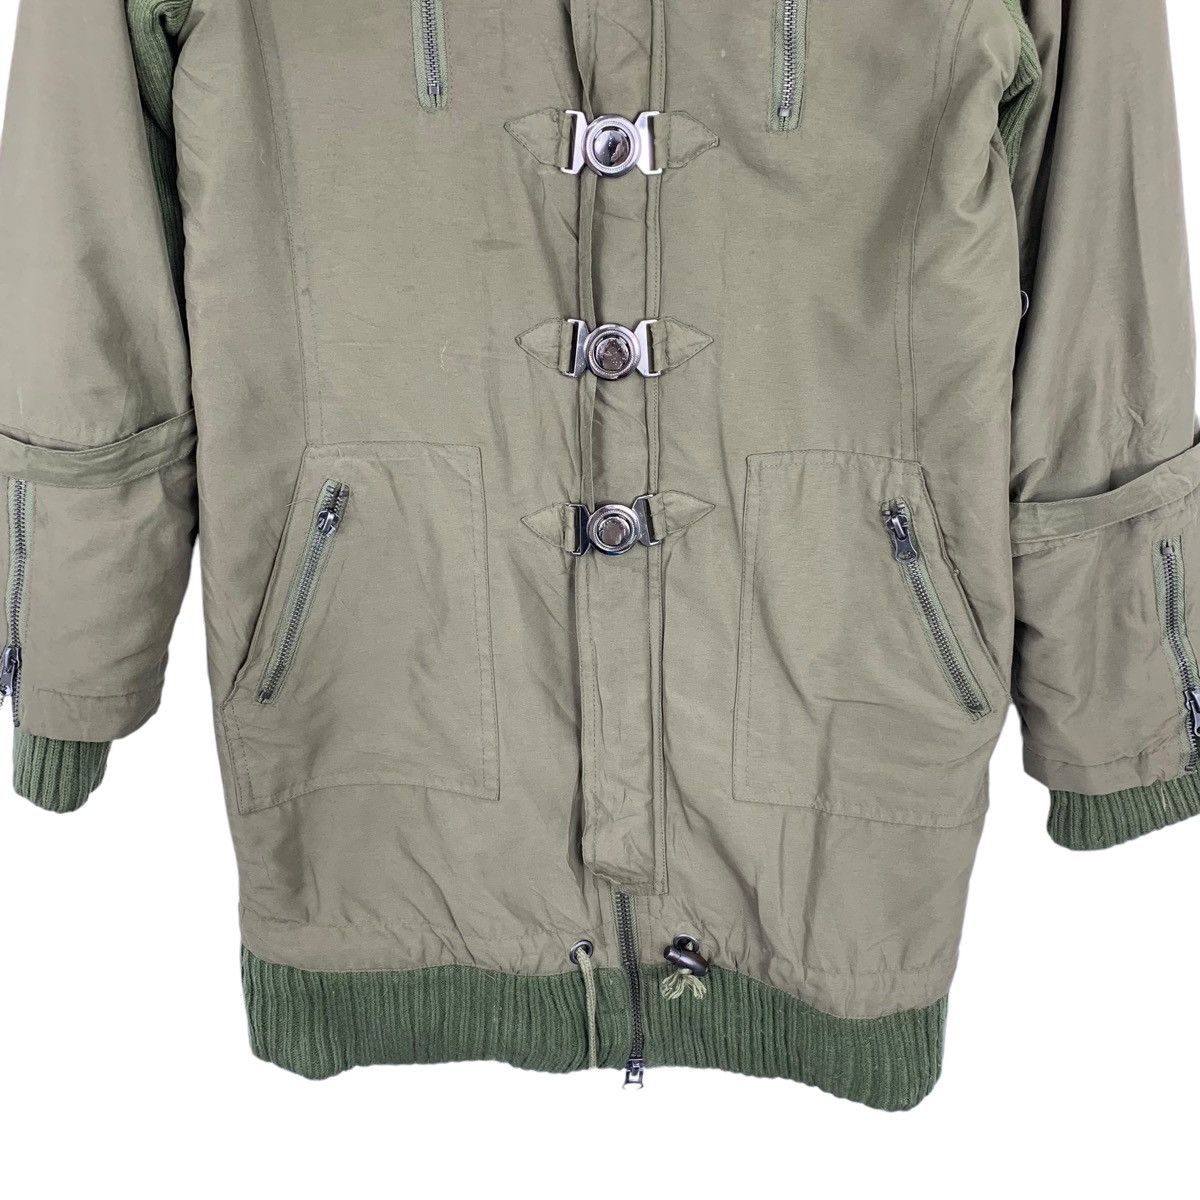 Designer Rare !! MAISON GILFY Long jacket jacket Size US S / EU 44-46 / 1 - 3 Thumbnail